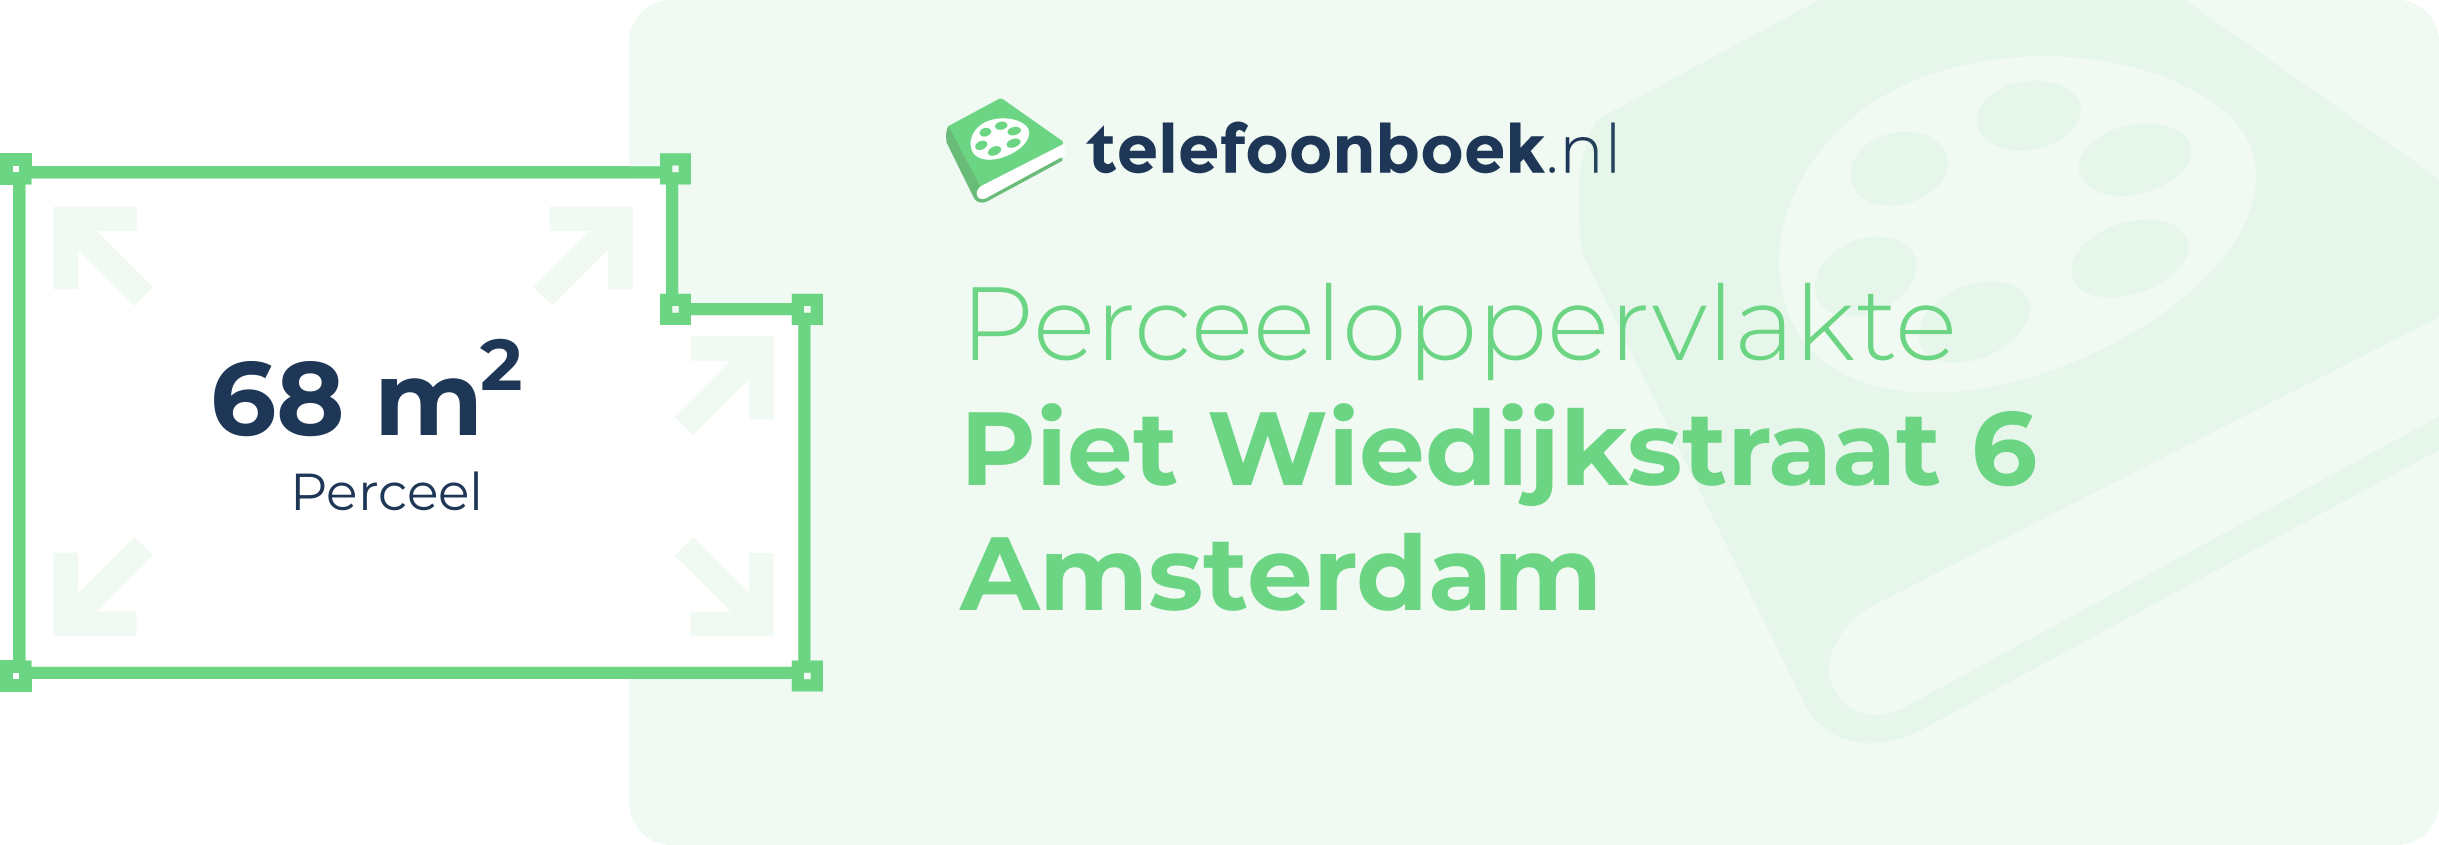 Perceeloppervlakte Piet Wiedijkstraat 6 Amsterdam